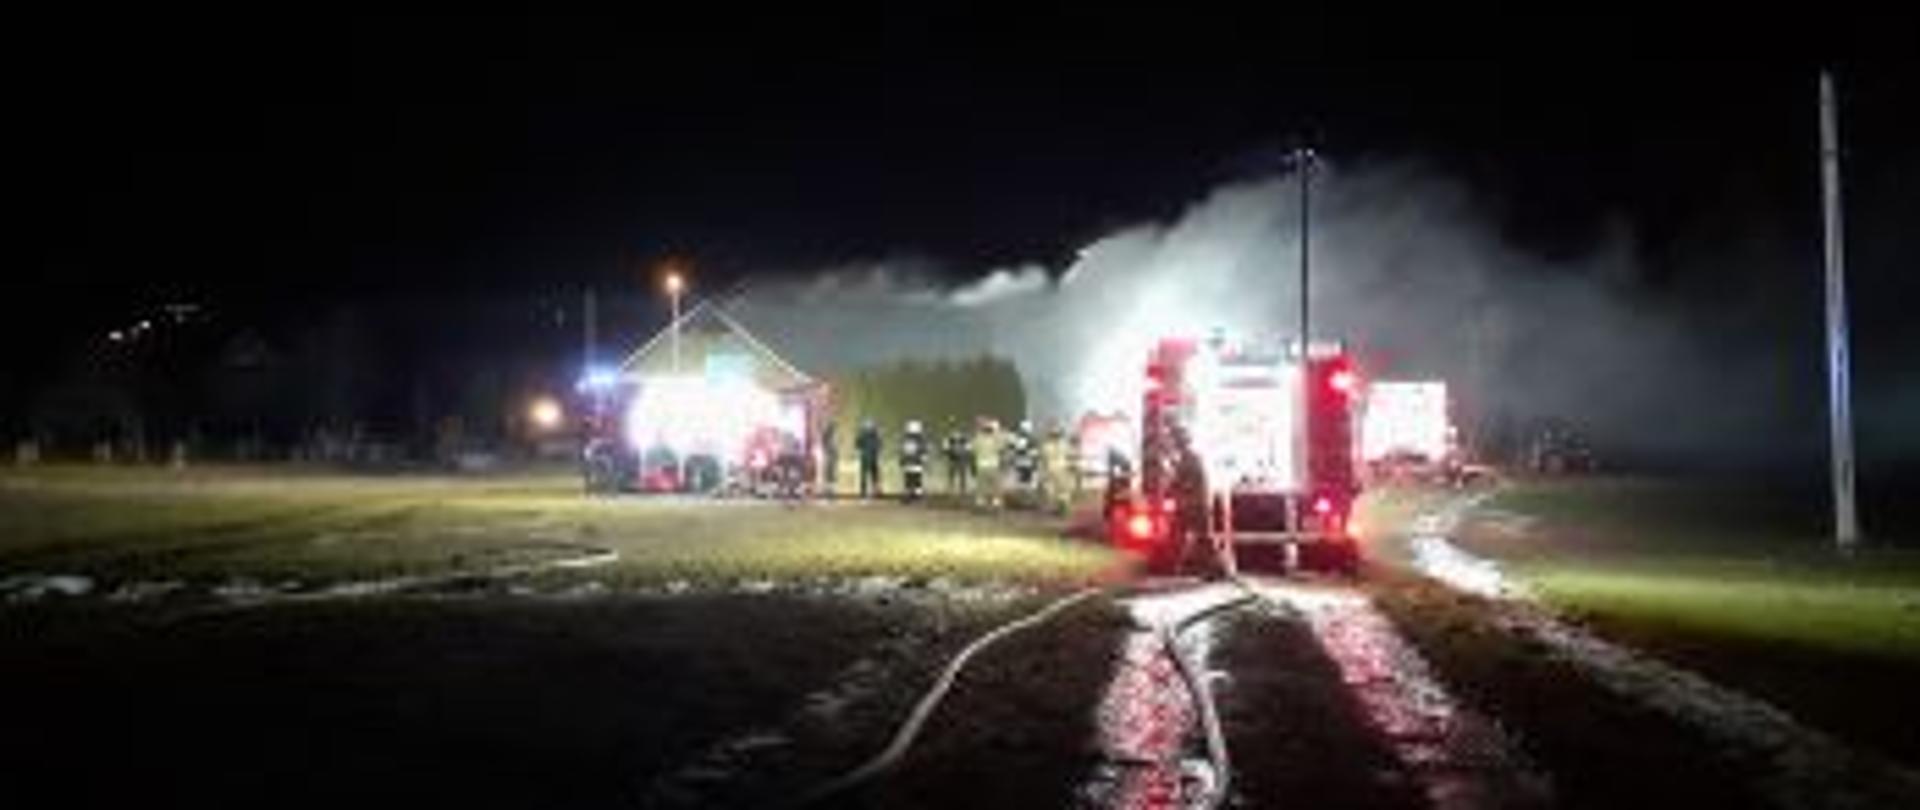 Zdjęcie przedstawia pożar garażu, stodoły i budynku mieszkalnego mającego miejsce w porze nocnej. W śrdkowej części zdjęcia widoczne są samochody strażackie. W oddali widoczna grupa strażaków. Z obiektów wydobywają się duże kłęby dymu.